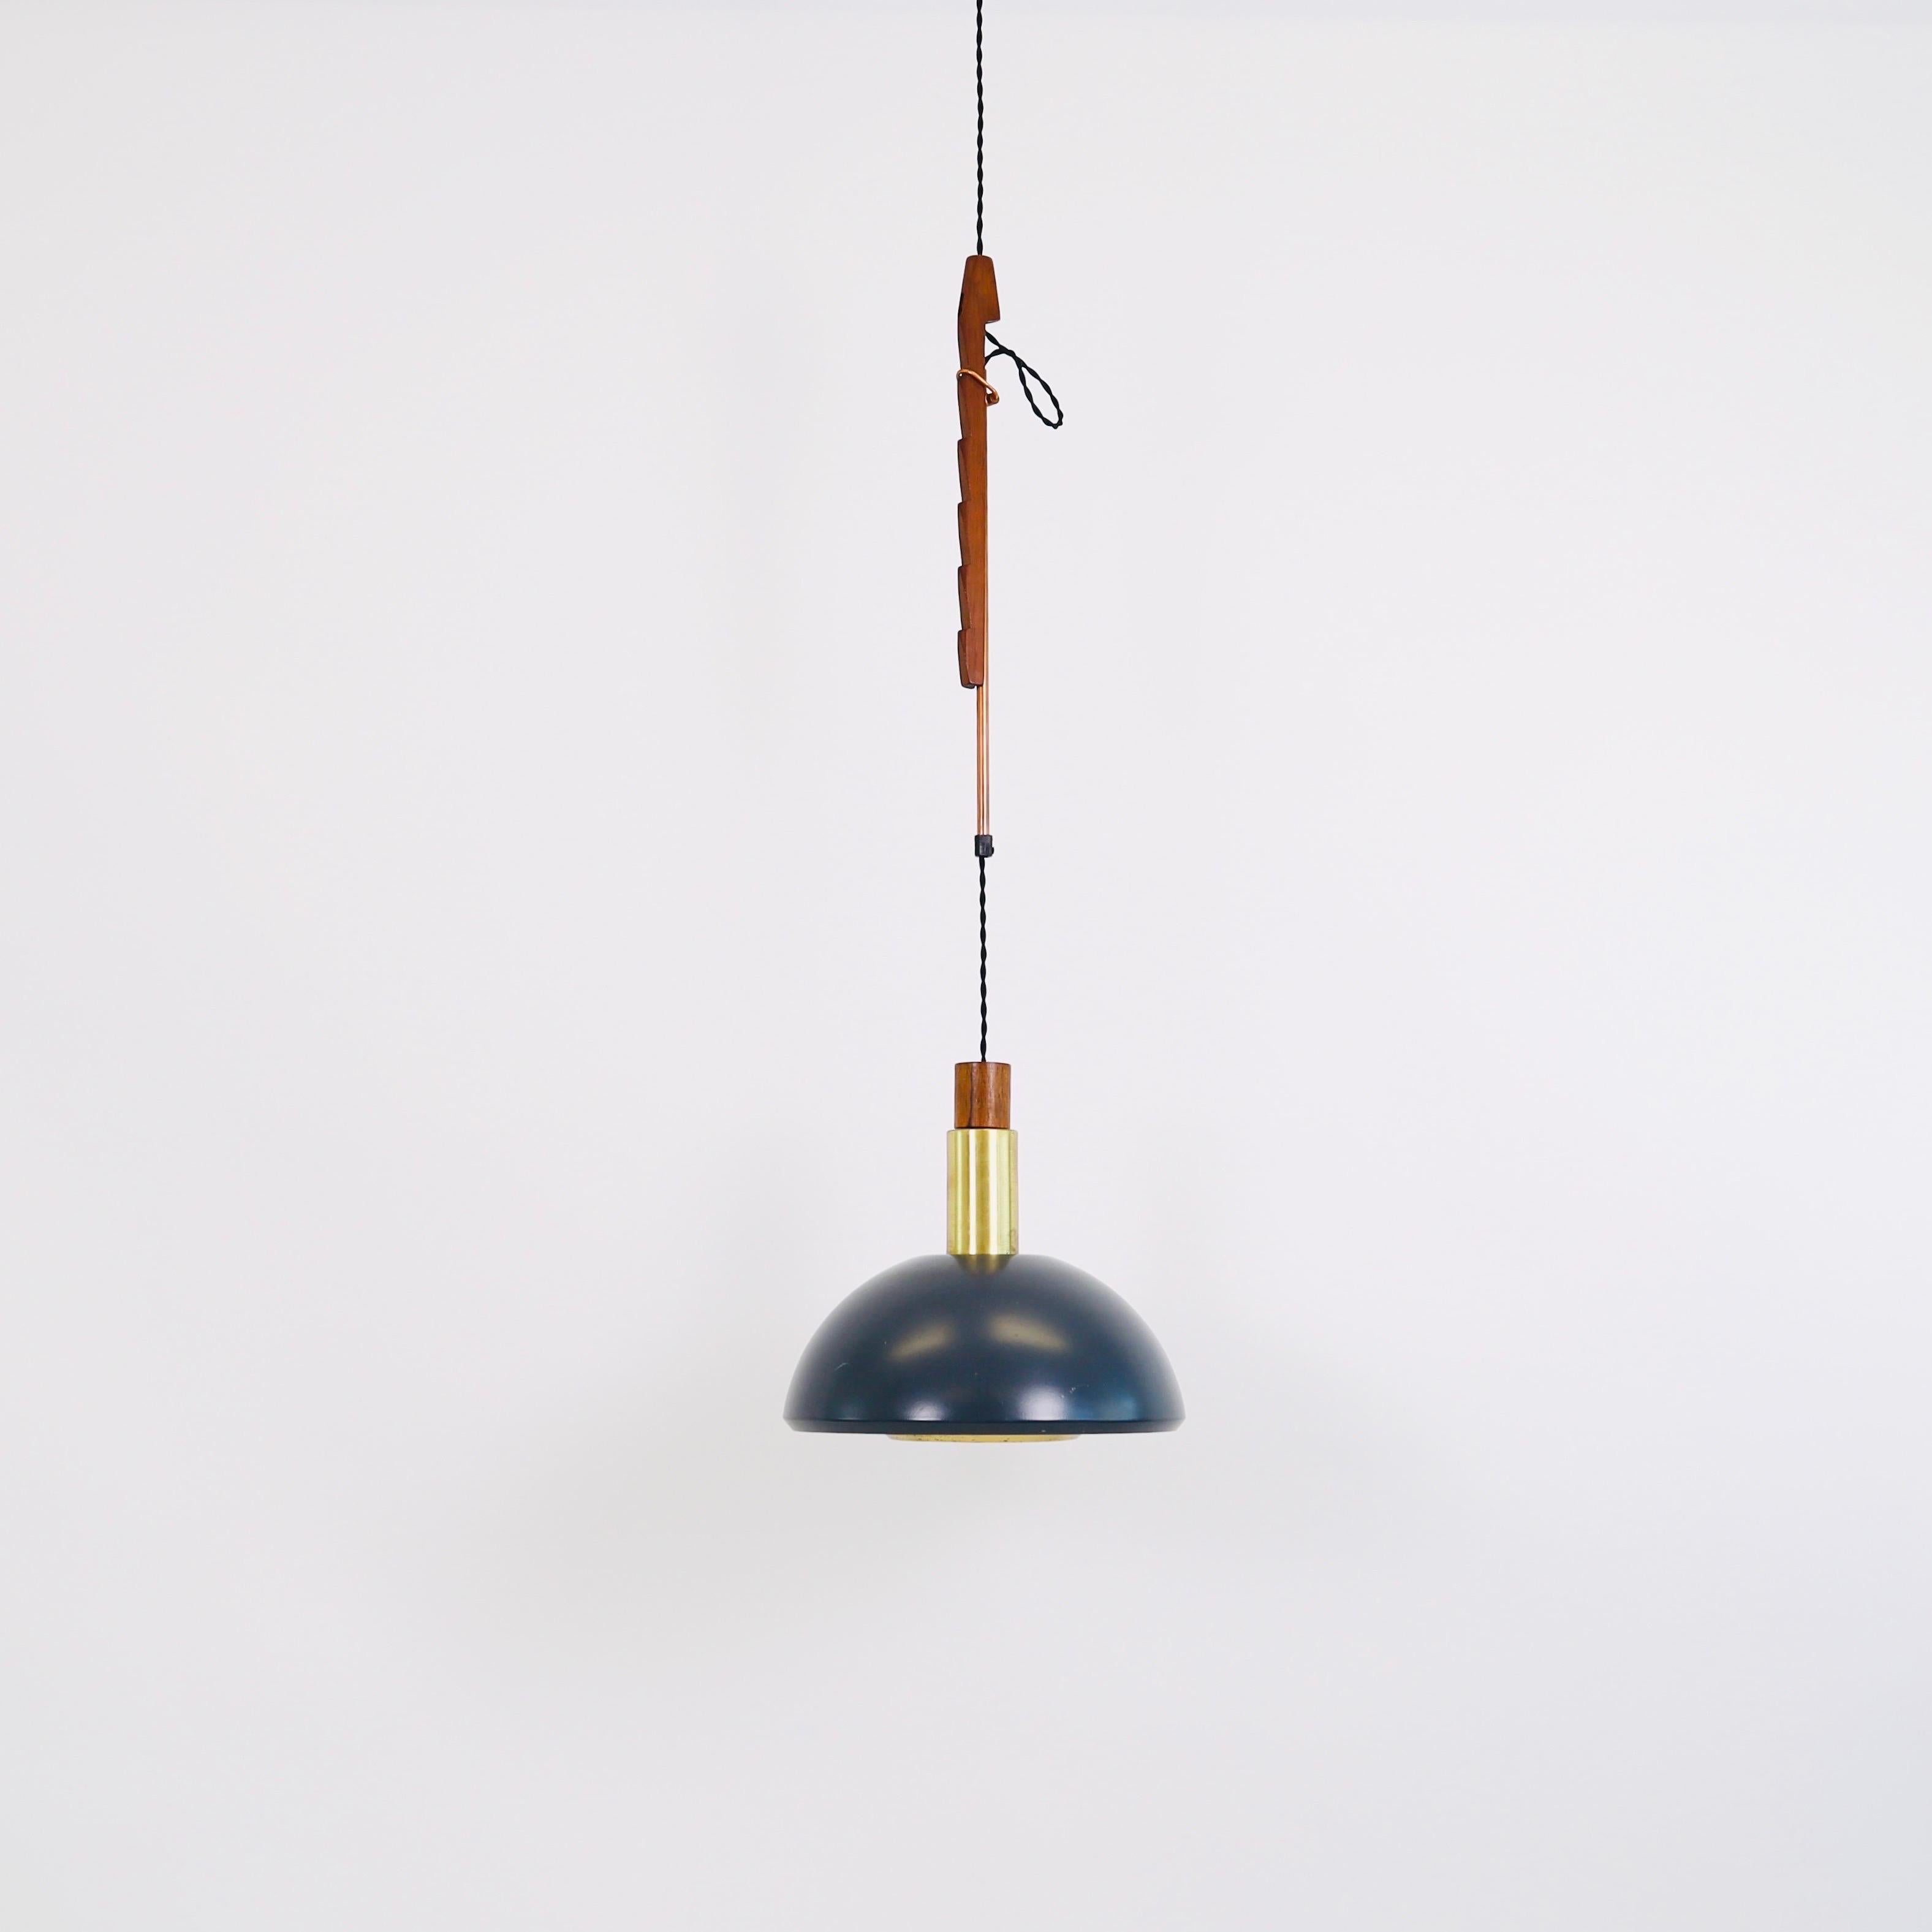 Une lampe suspendue conçue par Svend Aage Holm Sørensen dans les années 1960. Cette pièce rare avec sa suspension en bois de teck est une marque de fabrique du designer danois. 

* Une lampe suspendue en métal gris avec des détails en laiton et en